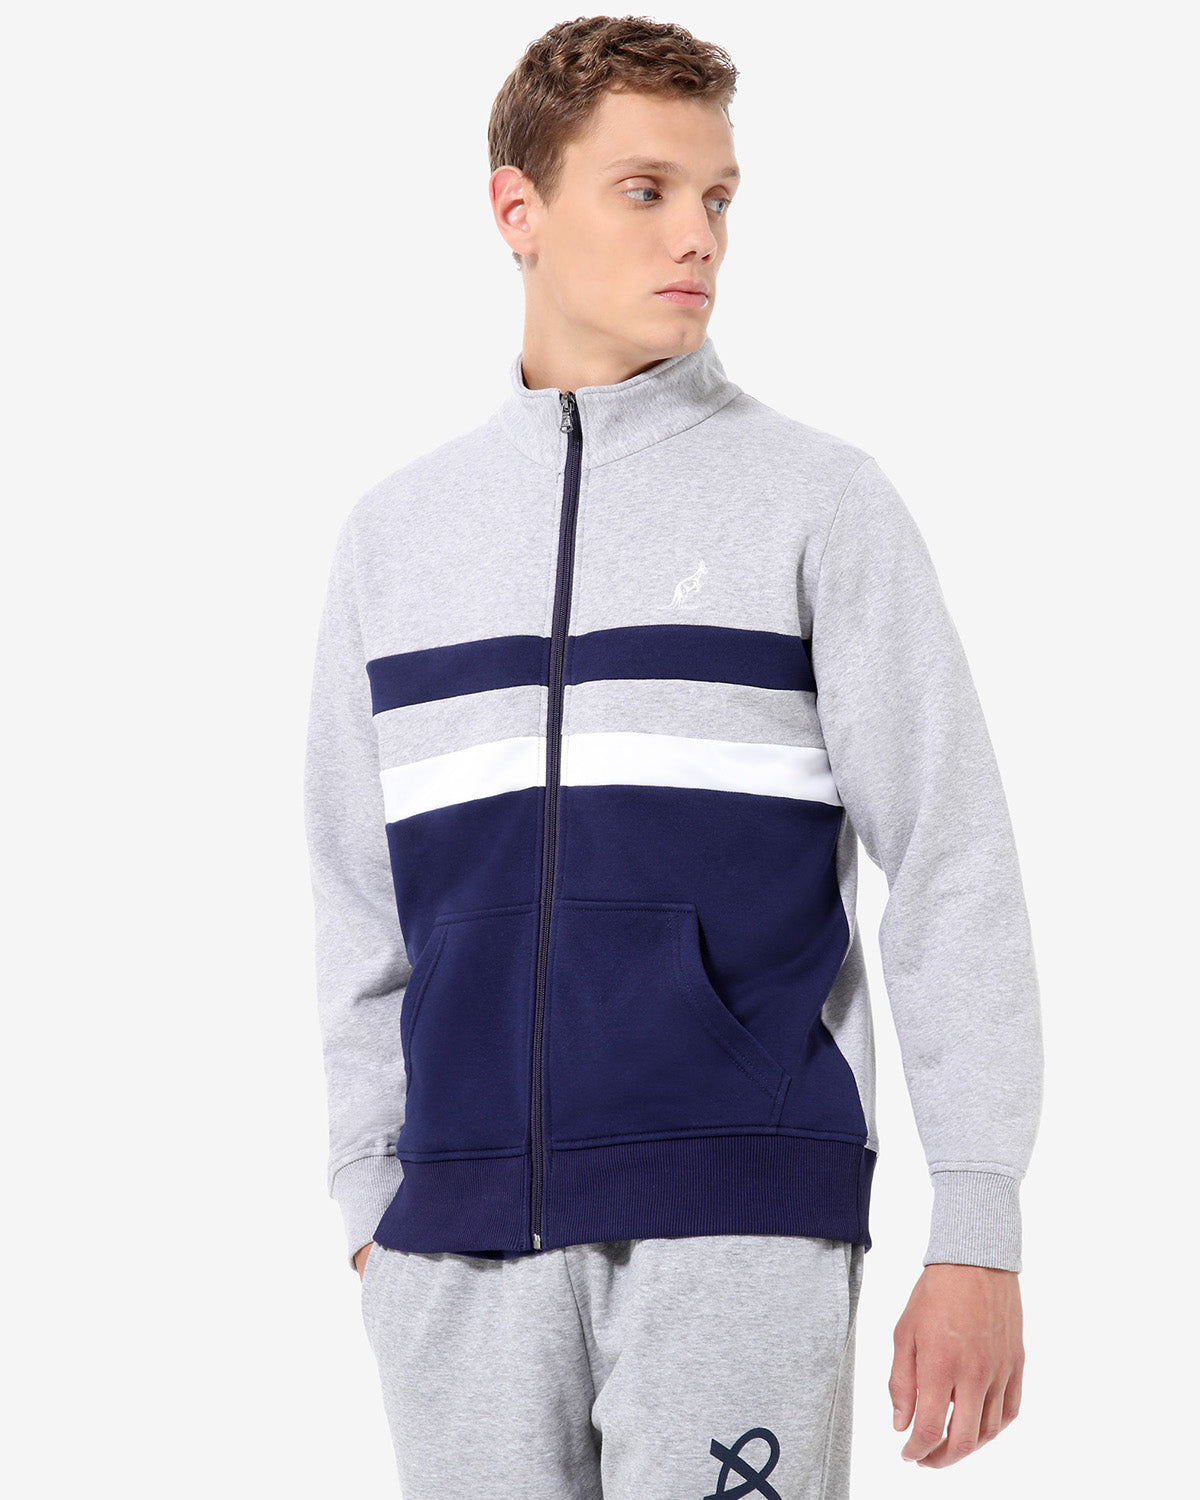 Full Zip Fleece Jacket: Australian Sportswear